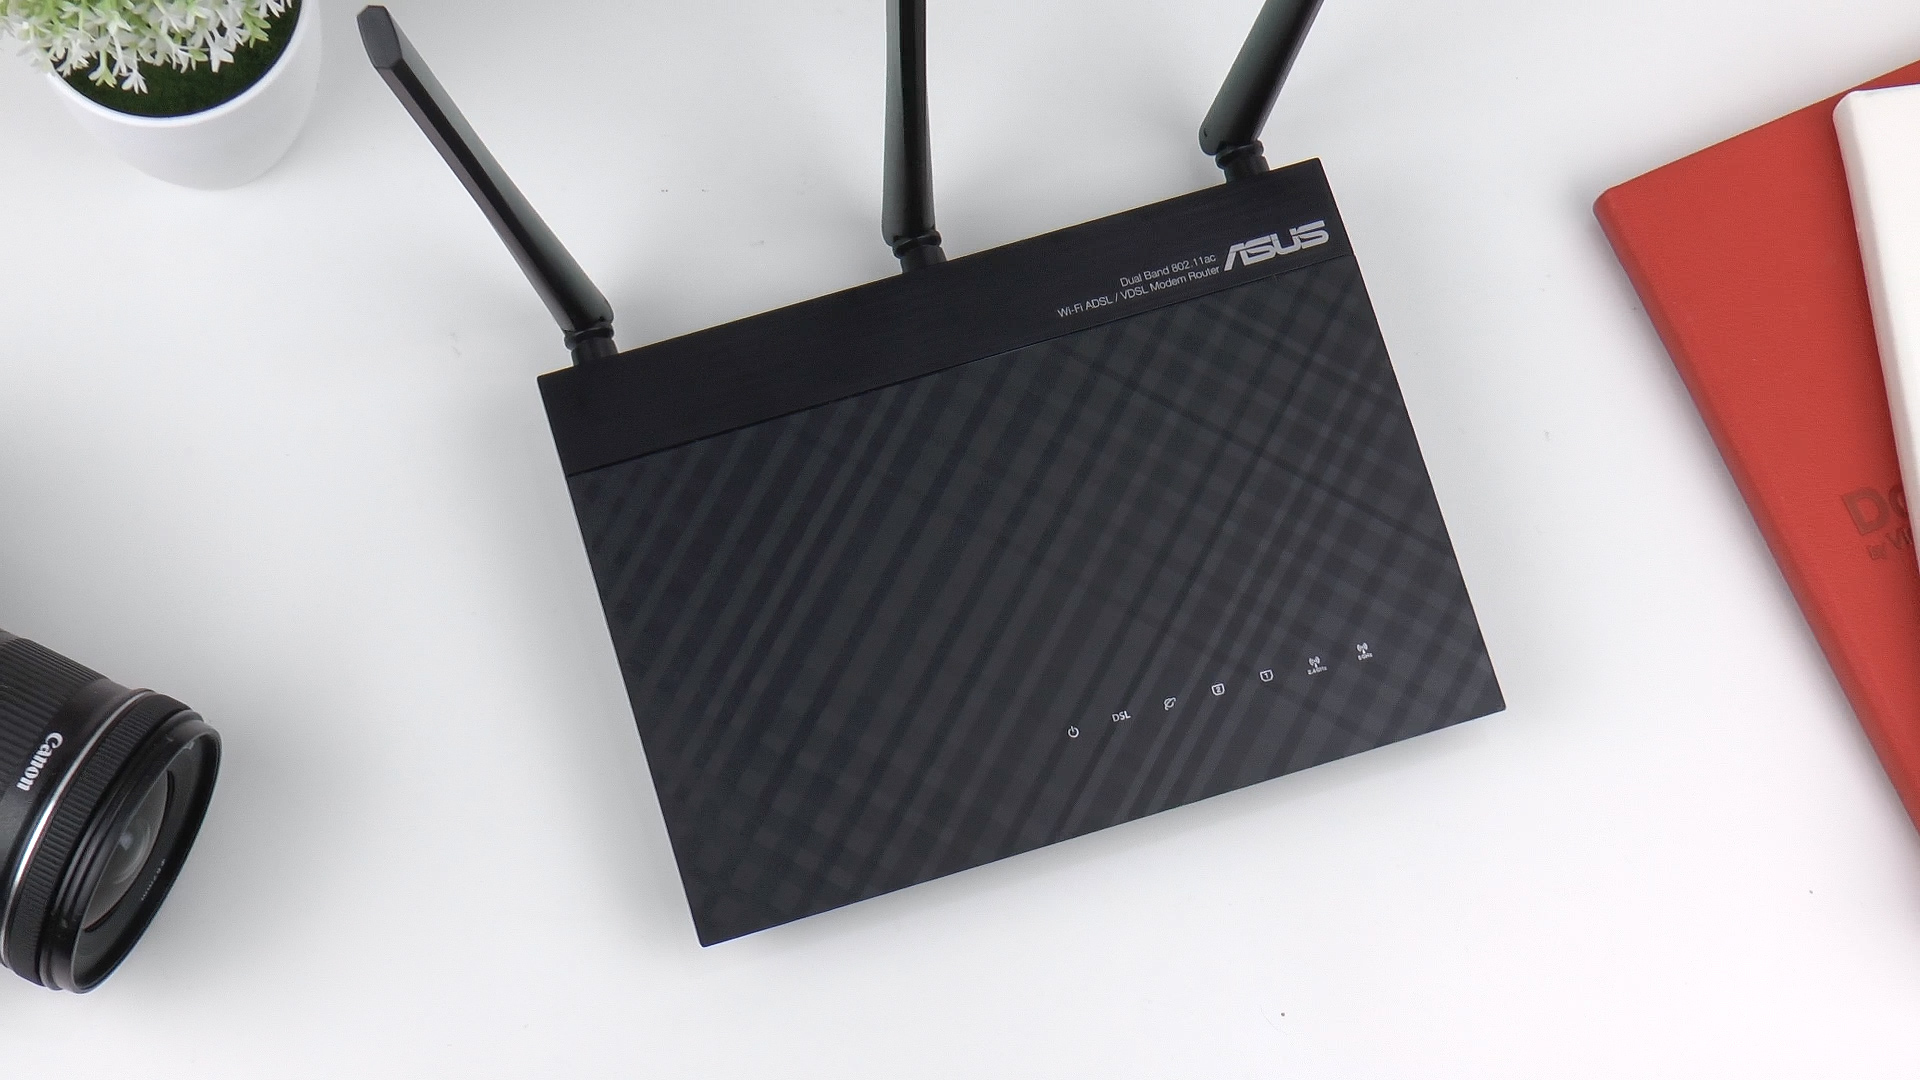 Asus DSL-AC51 modem/router incelemesi 'F/P ürünü mü, değil mi?'